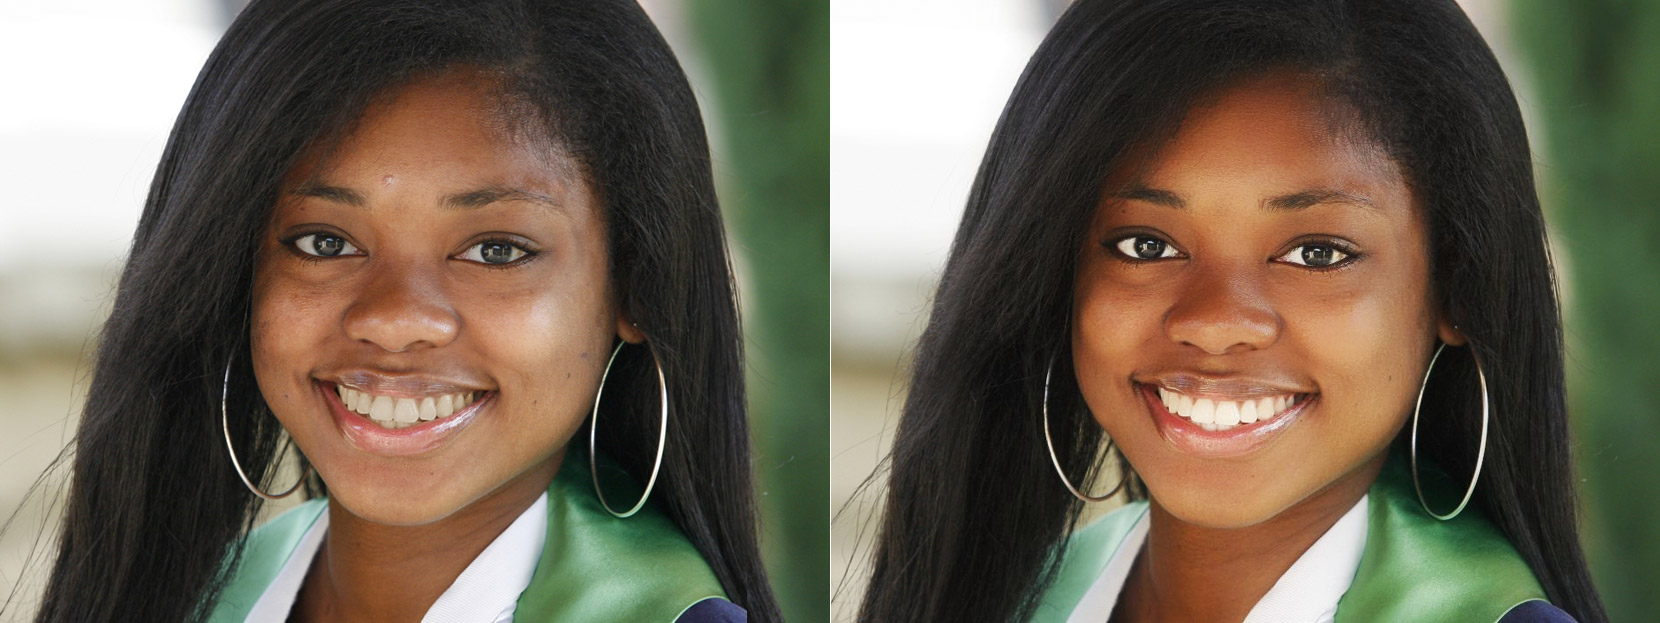 Foto de antes y después de un retoque con Makeup.Pho.to